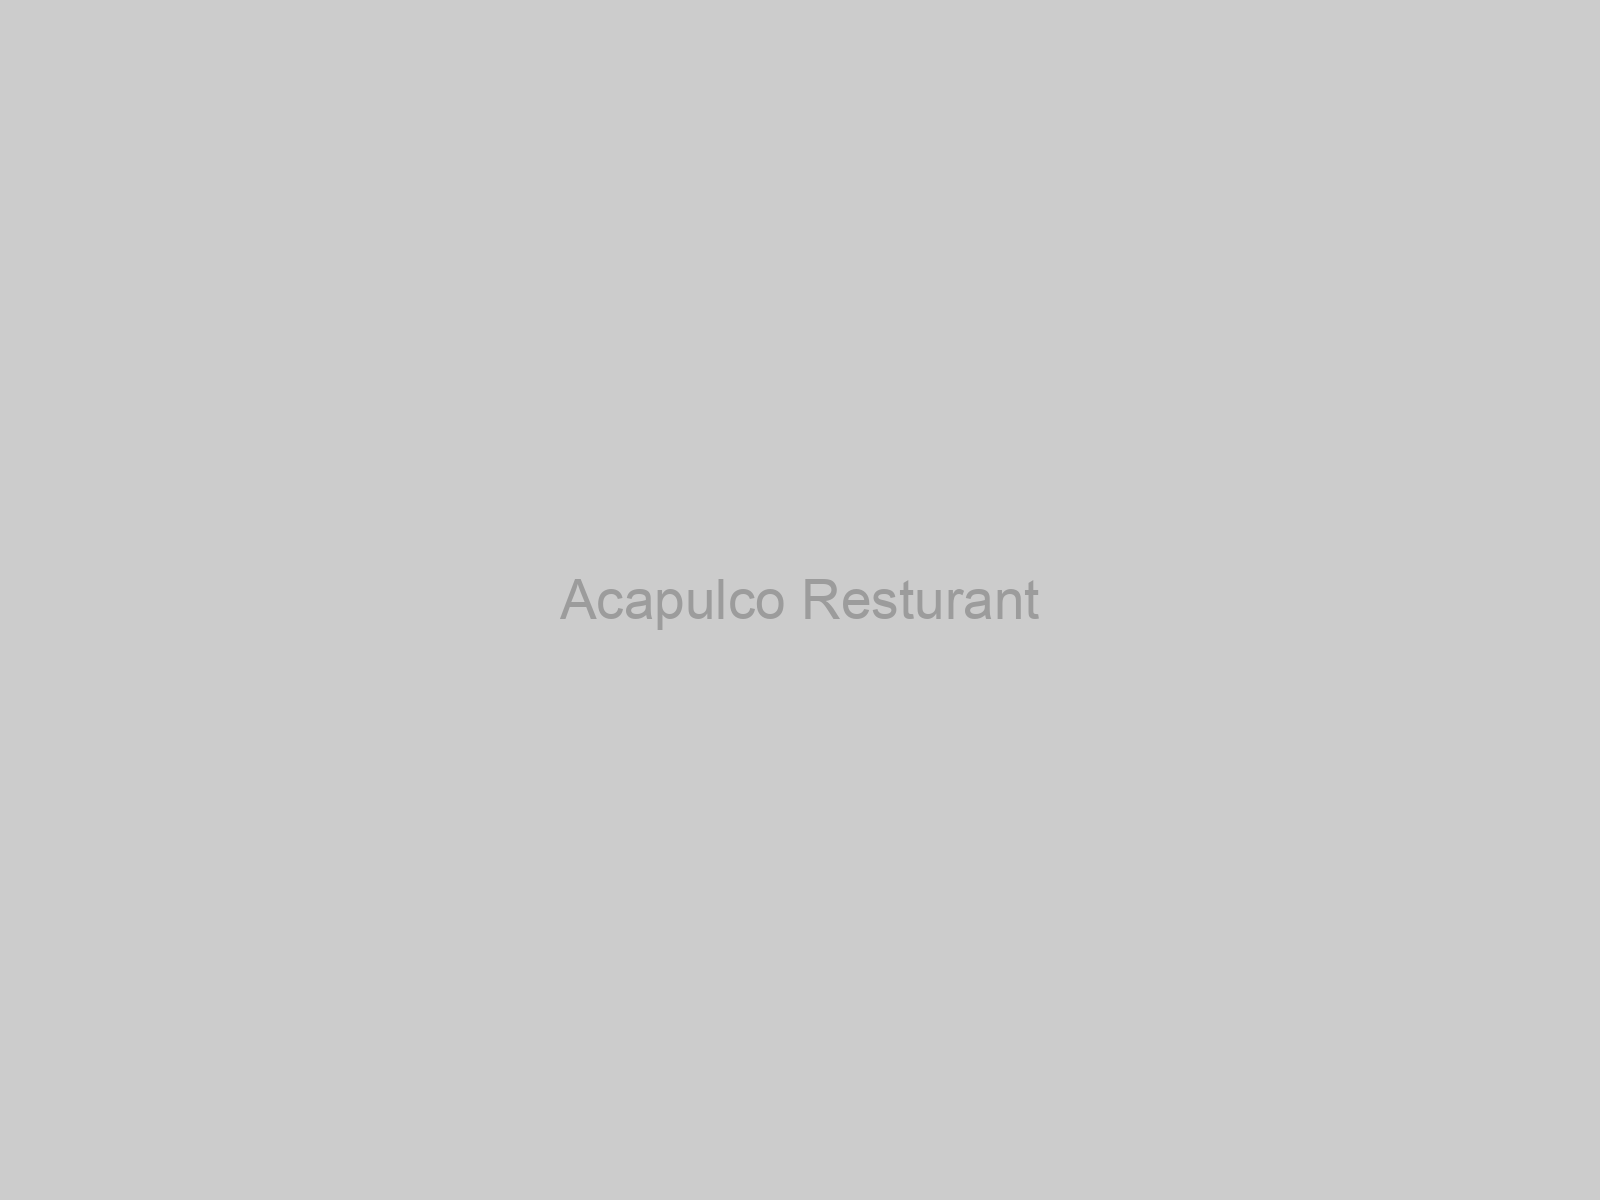 Acapulco Resturant